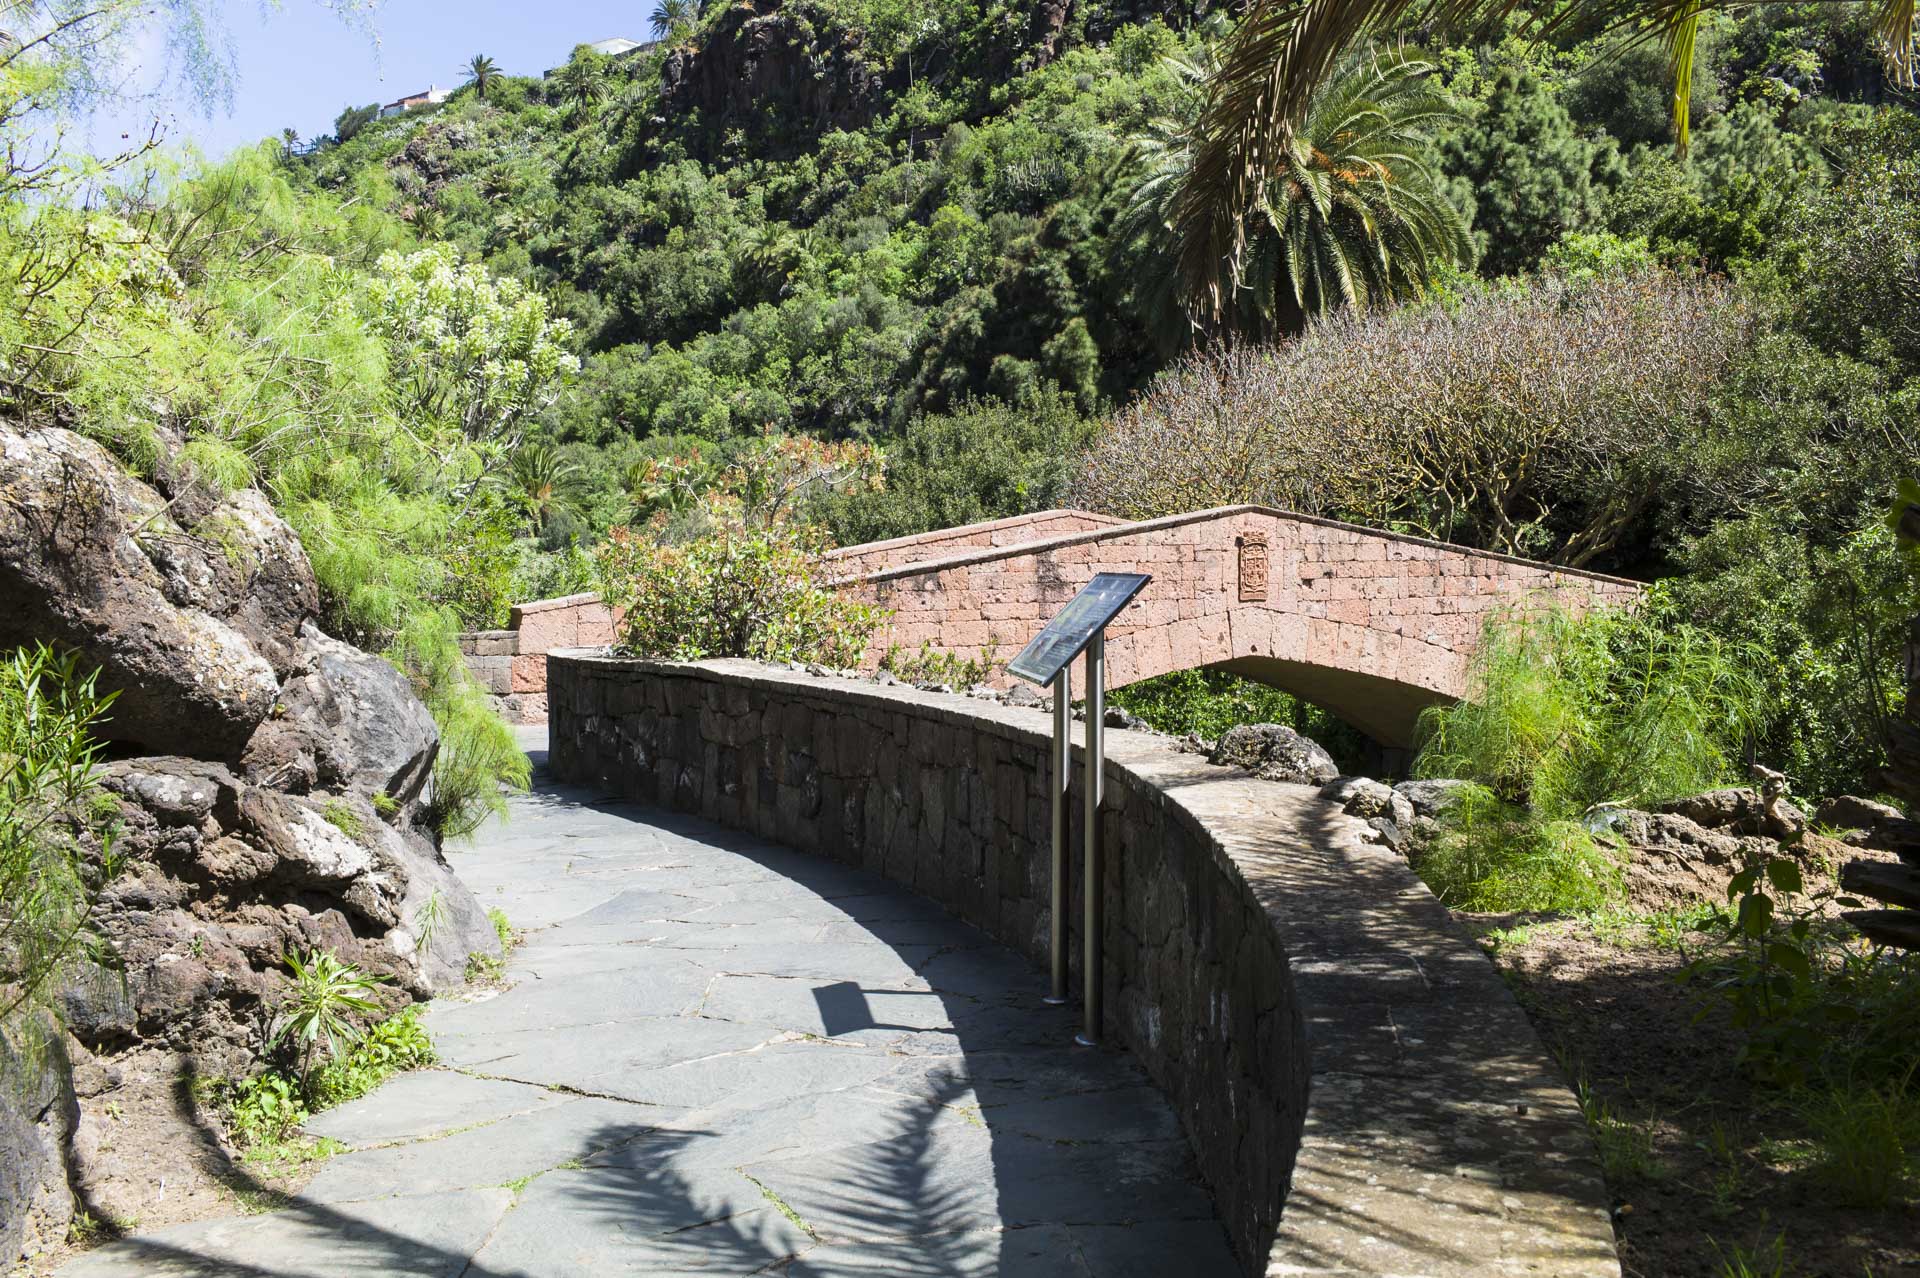 Botanischer Garten auf Gran Canaria bei Las Palmas – Jardín Botánico Canario Viera y Clavijo.